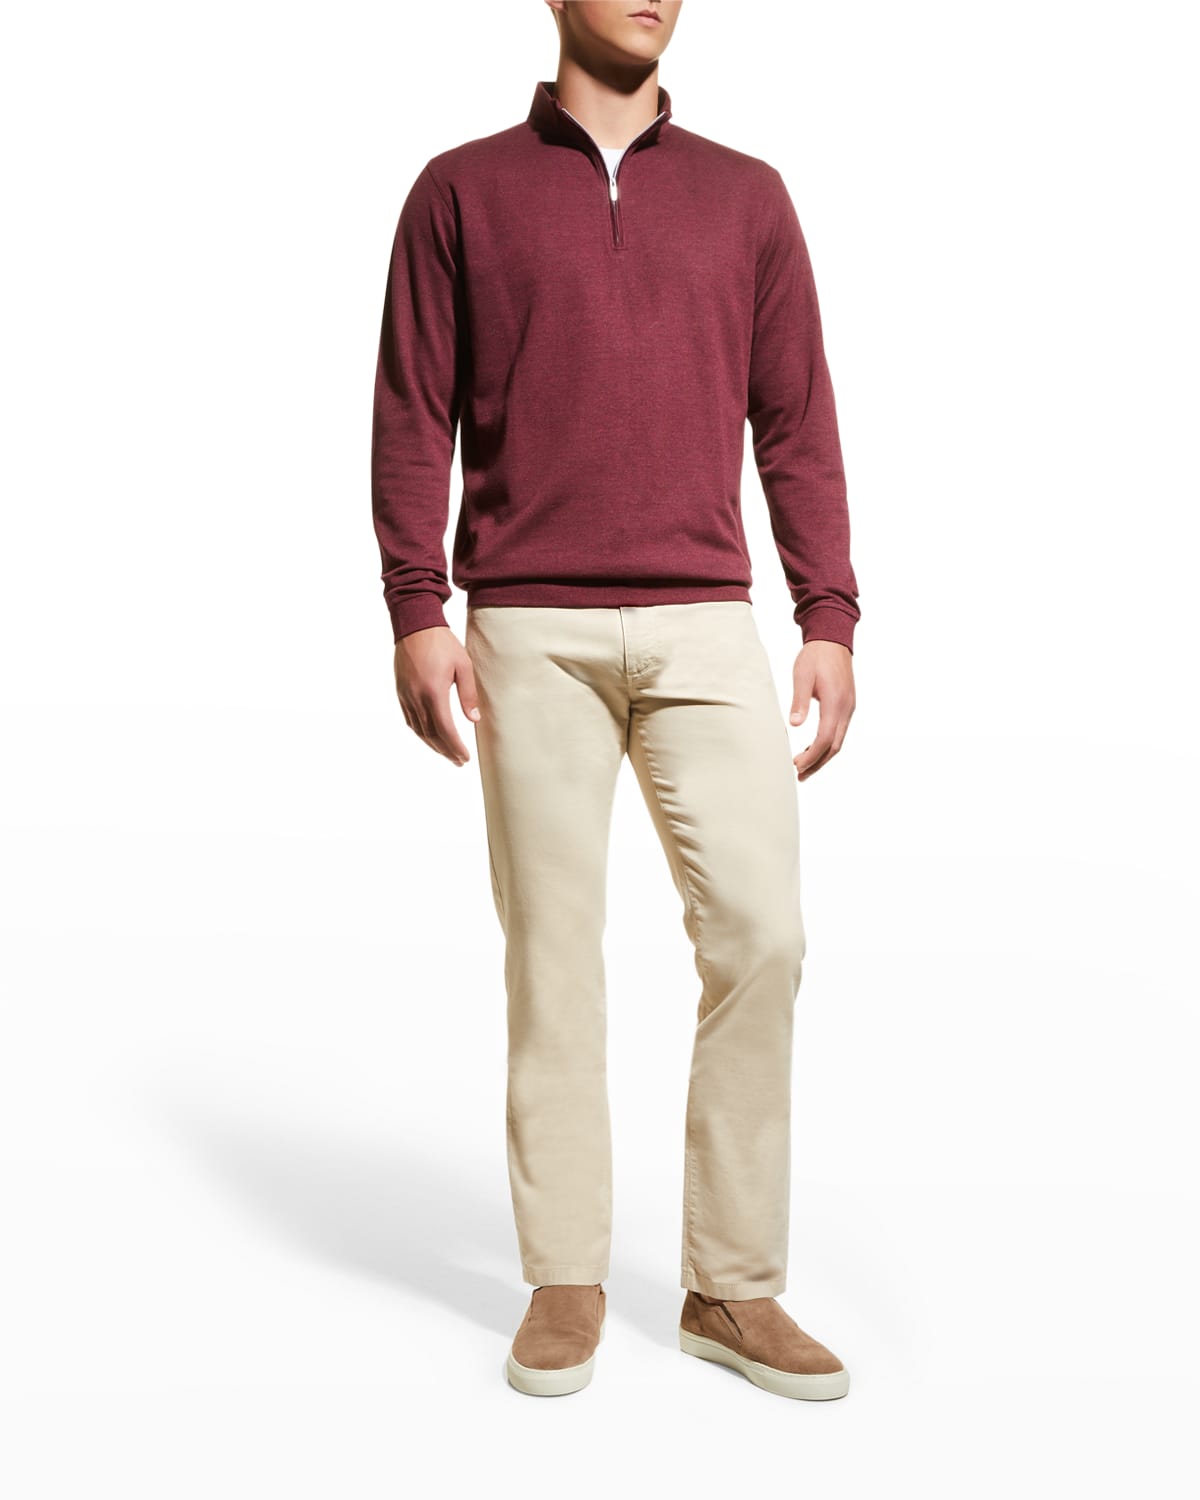 Peter Millar Men's Crown Comfort Interlock Quarter-Zip Sweater